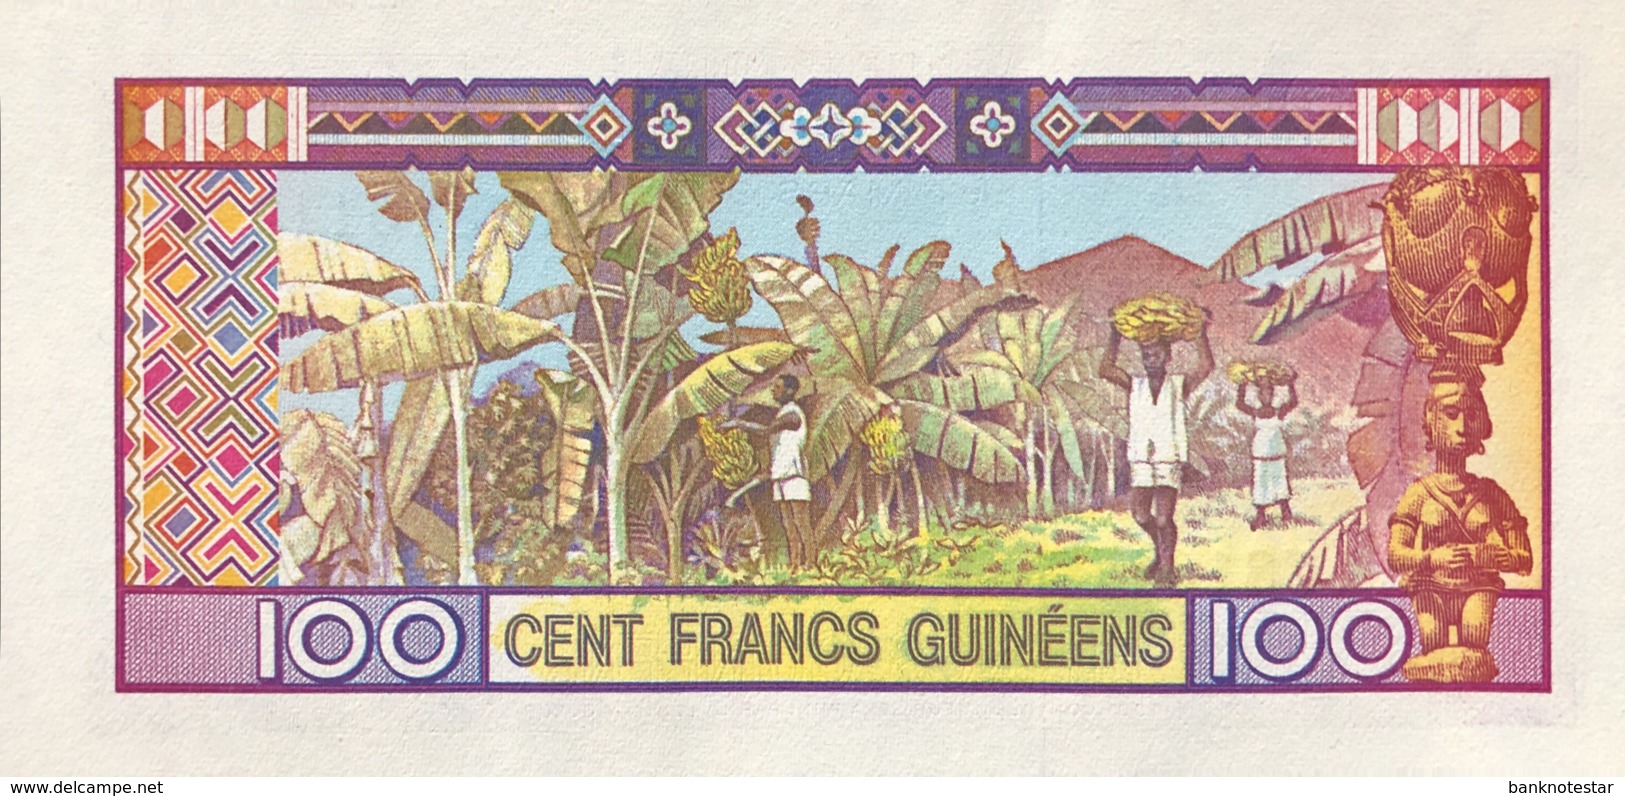 Guinea 100 Francs, P-30 (1985) - UNC - Guinea